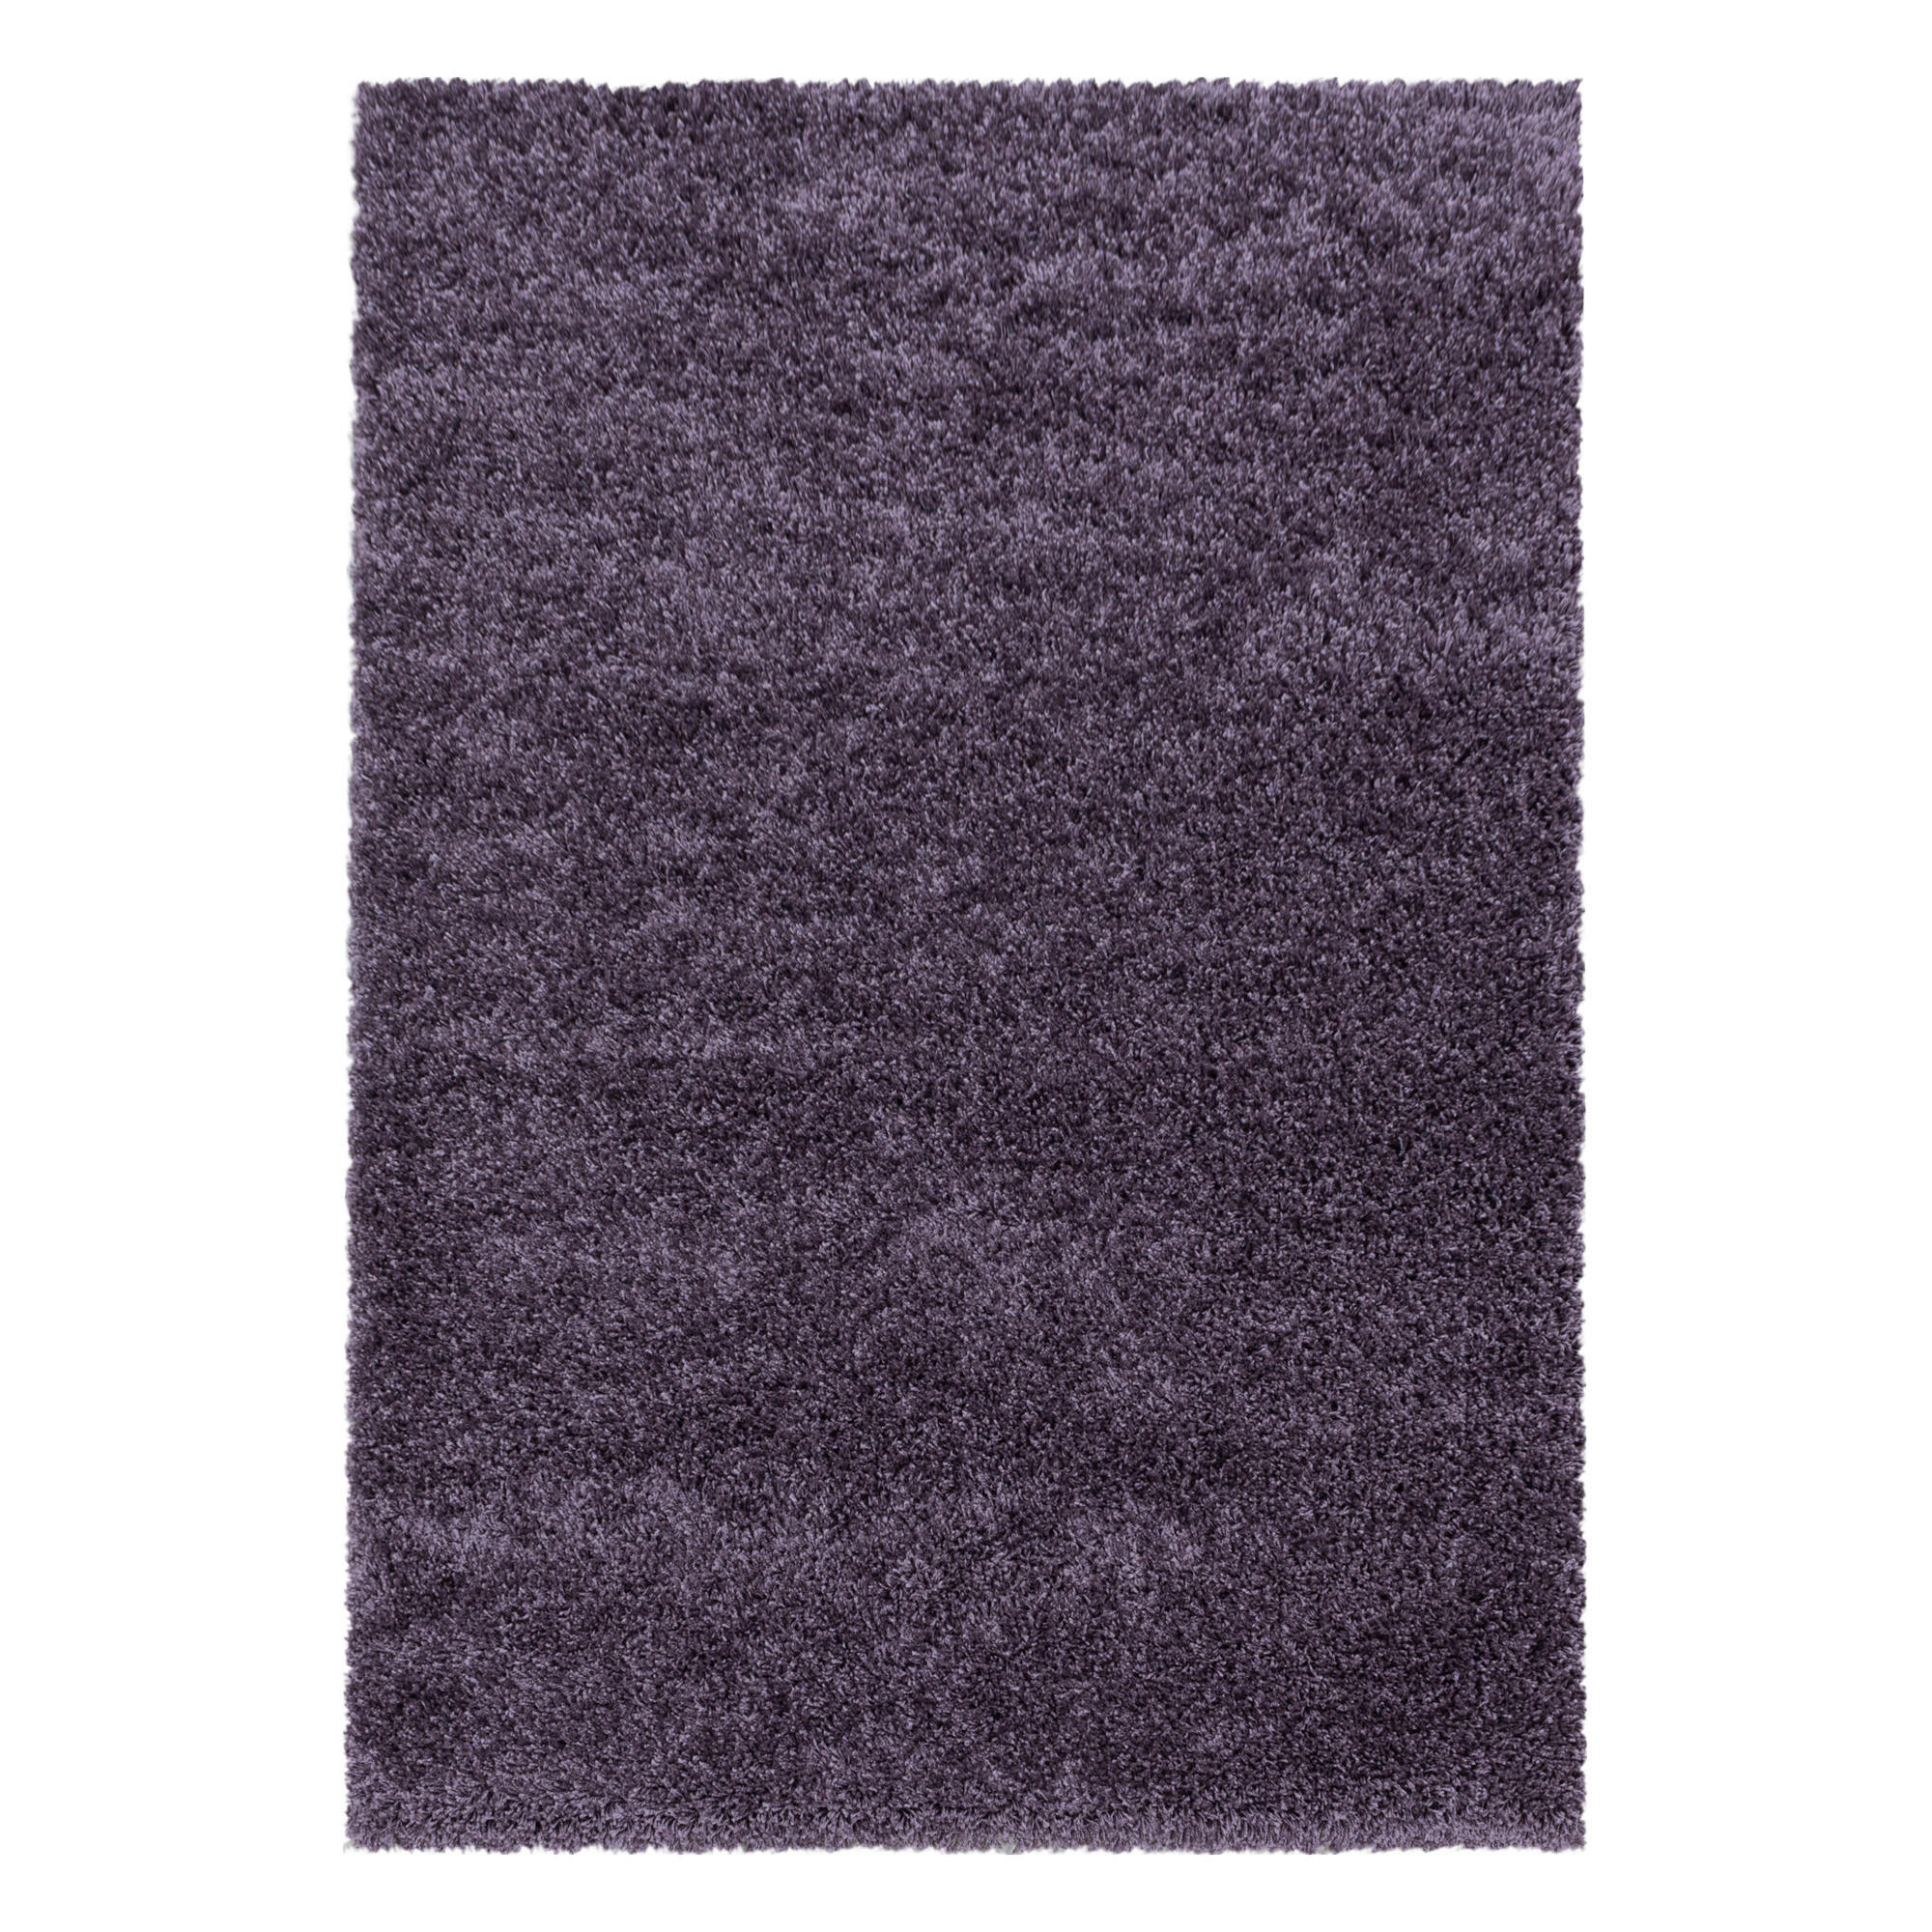 LÄUFER  80/250 cm  gewebt  Violett   - Violett, Basics, Textil (80/250cm) - Novel